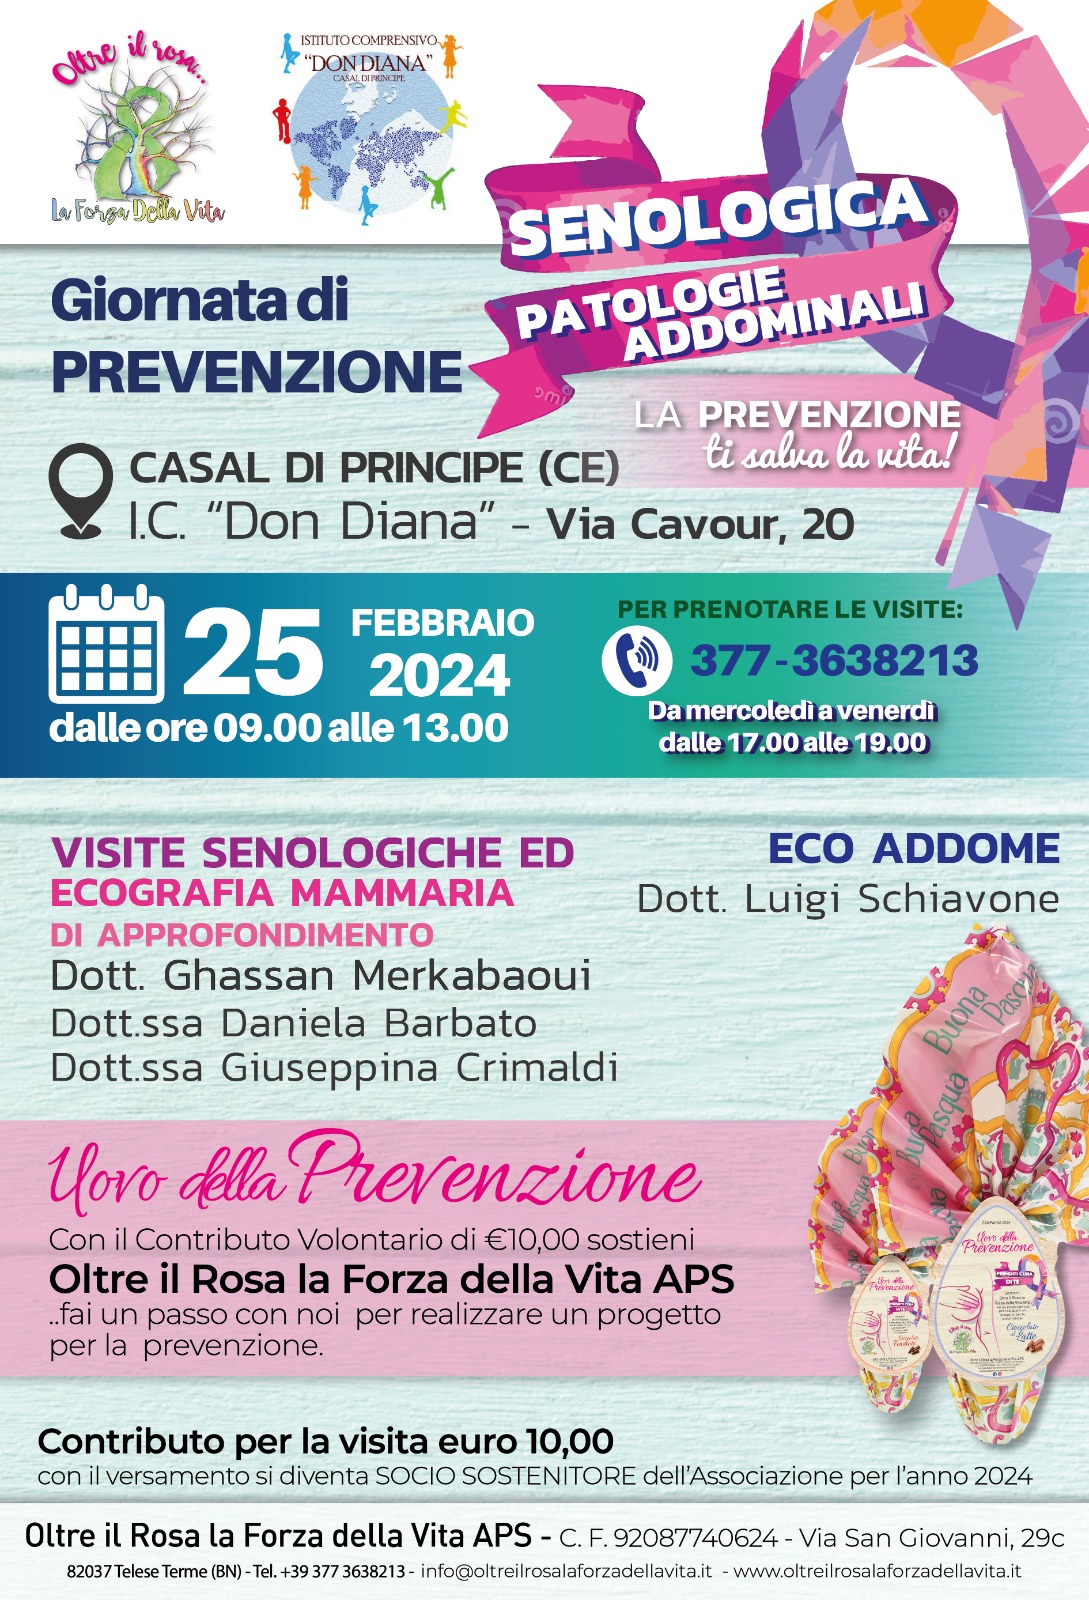 Giornata di prevenzione senologica e delle patologie addominali, del 25 febbraio 2024, presso I.C. Don Diana, via Cavour 20, Casal di Principe